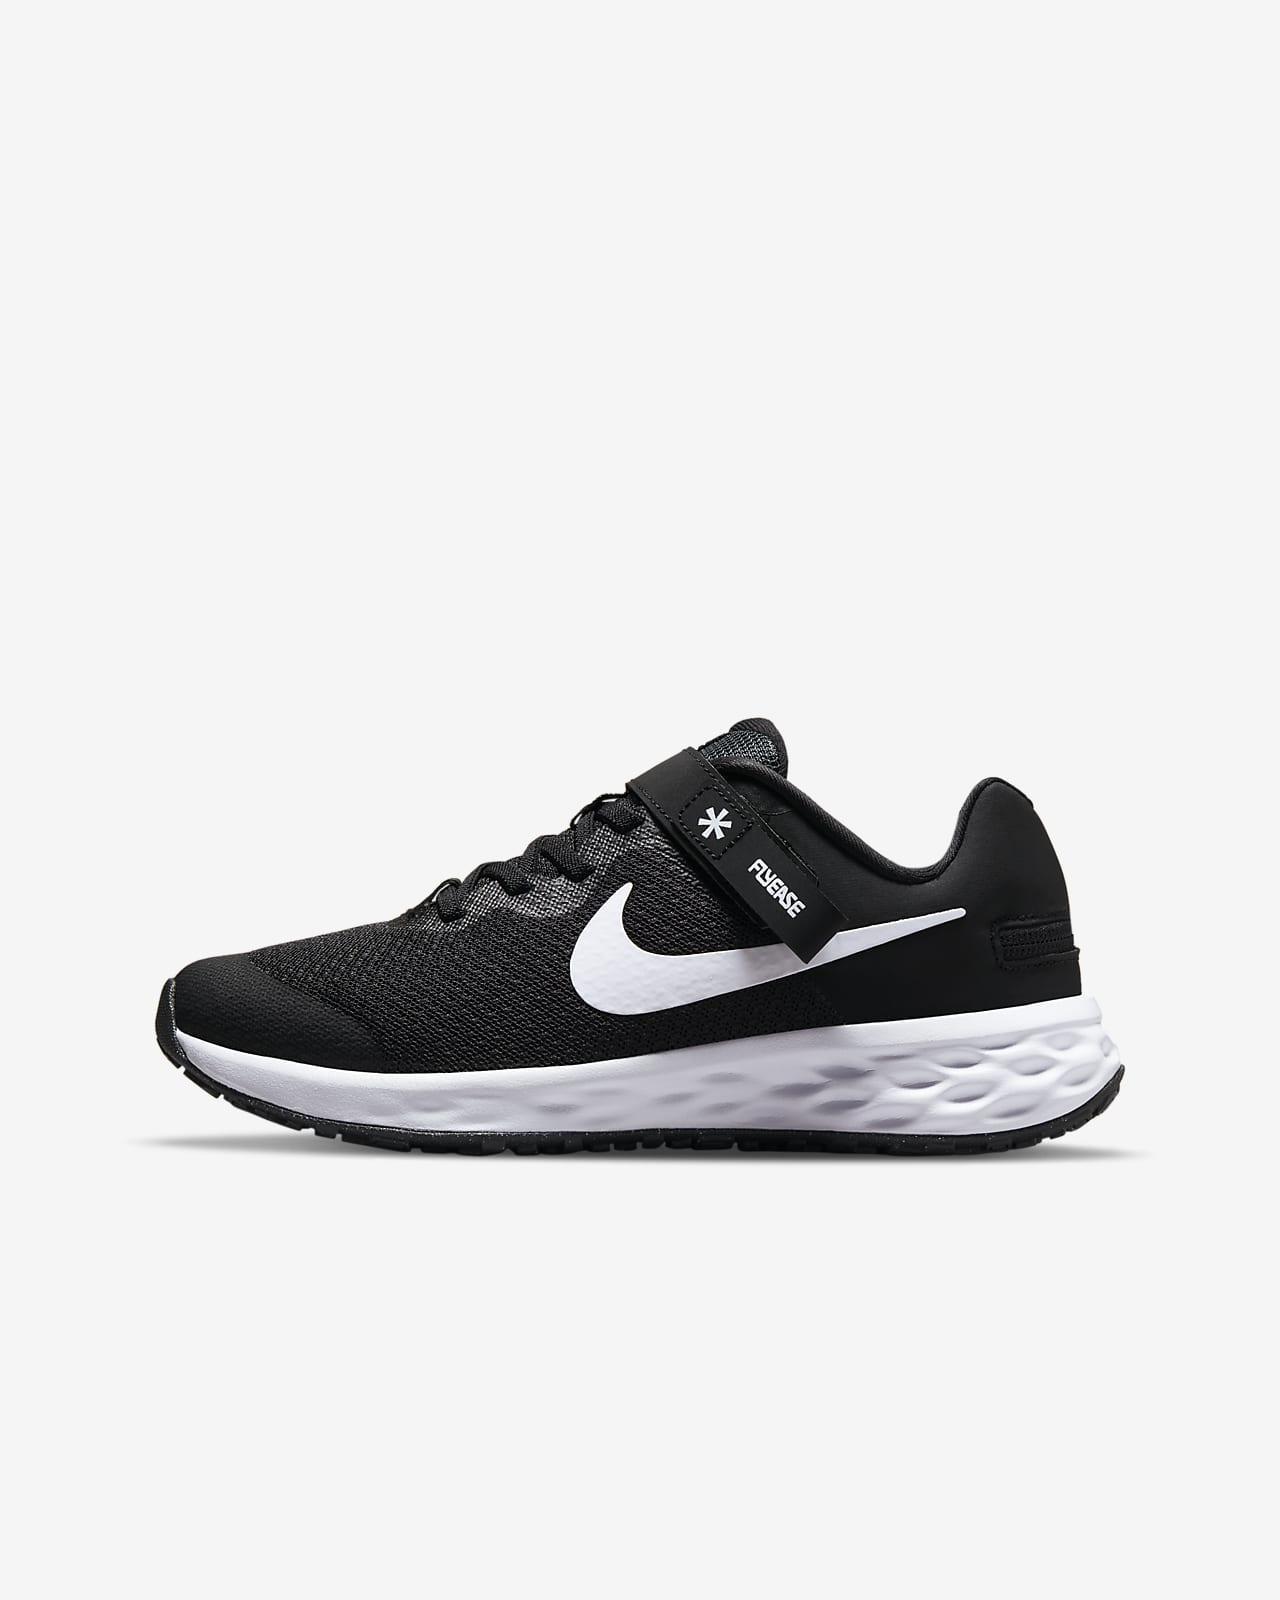 Παπούτσι για τρέξιμο σε δρόμο με εύκολη εφαρμογή/αφαίρεση Nike Revolution 6 FlyEase για μεγάλα παιδιά